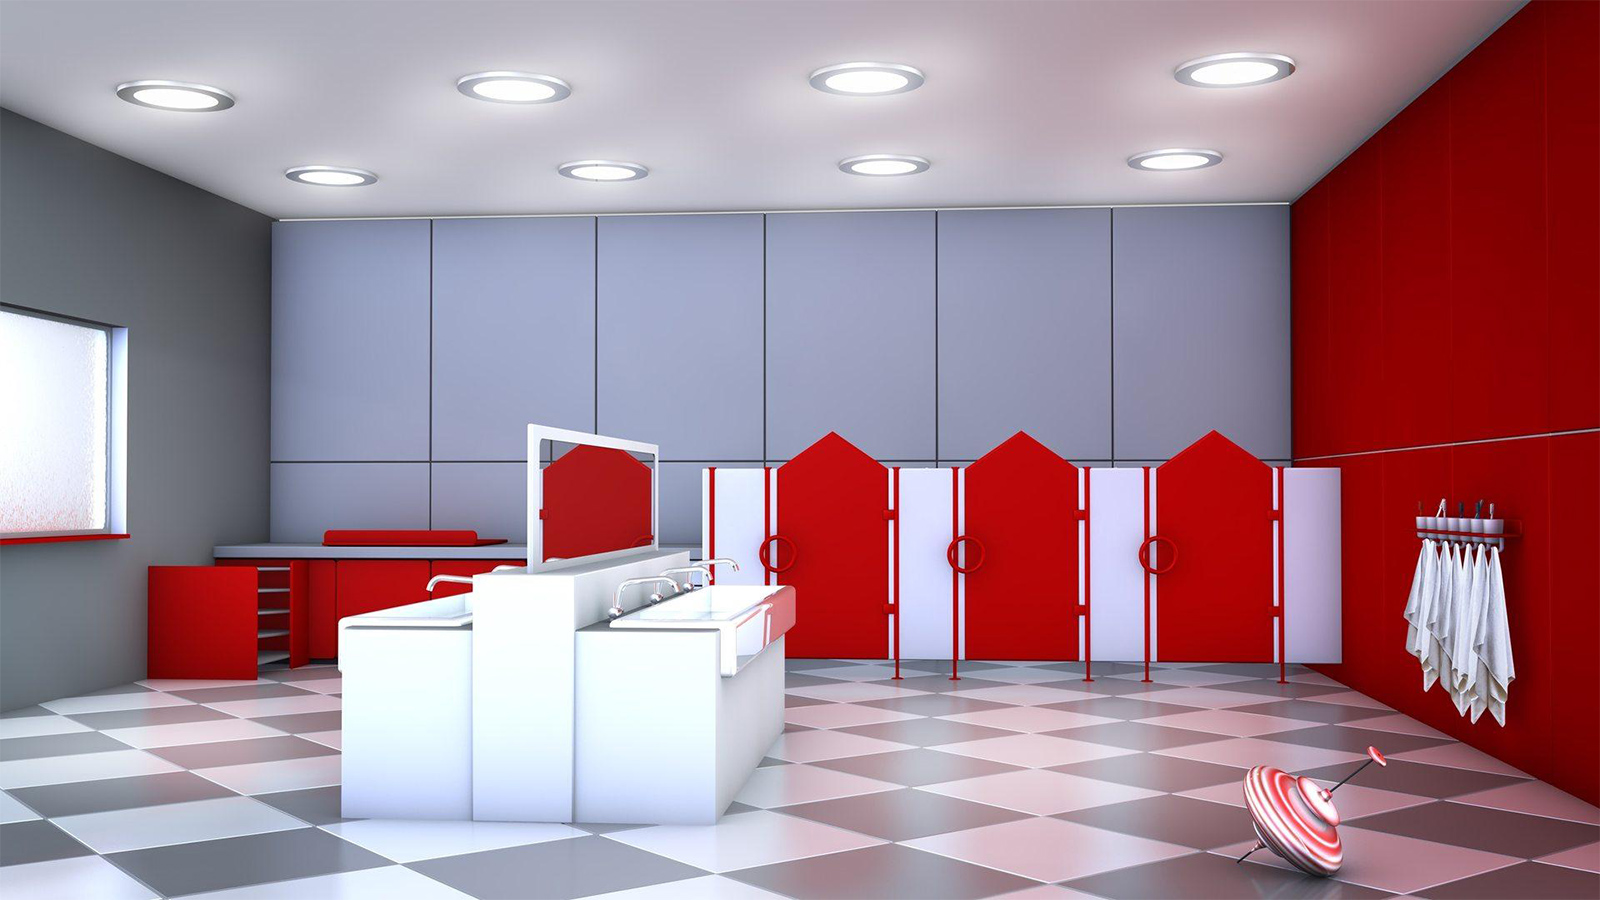 Trennwände zwischen einzelnen Toilettenkabinen. Weiß-grau karierter Fliesenboden, rote und graue Wände, rot-weiße Kabinen, weiße Waschbecken